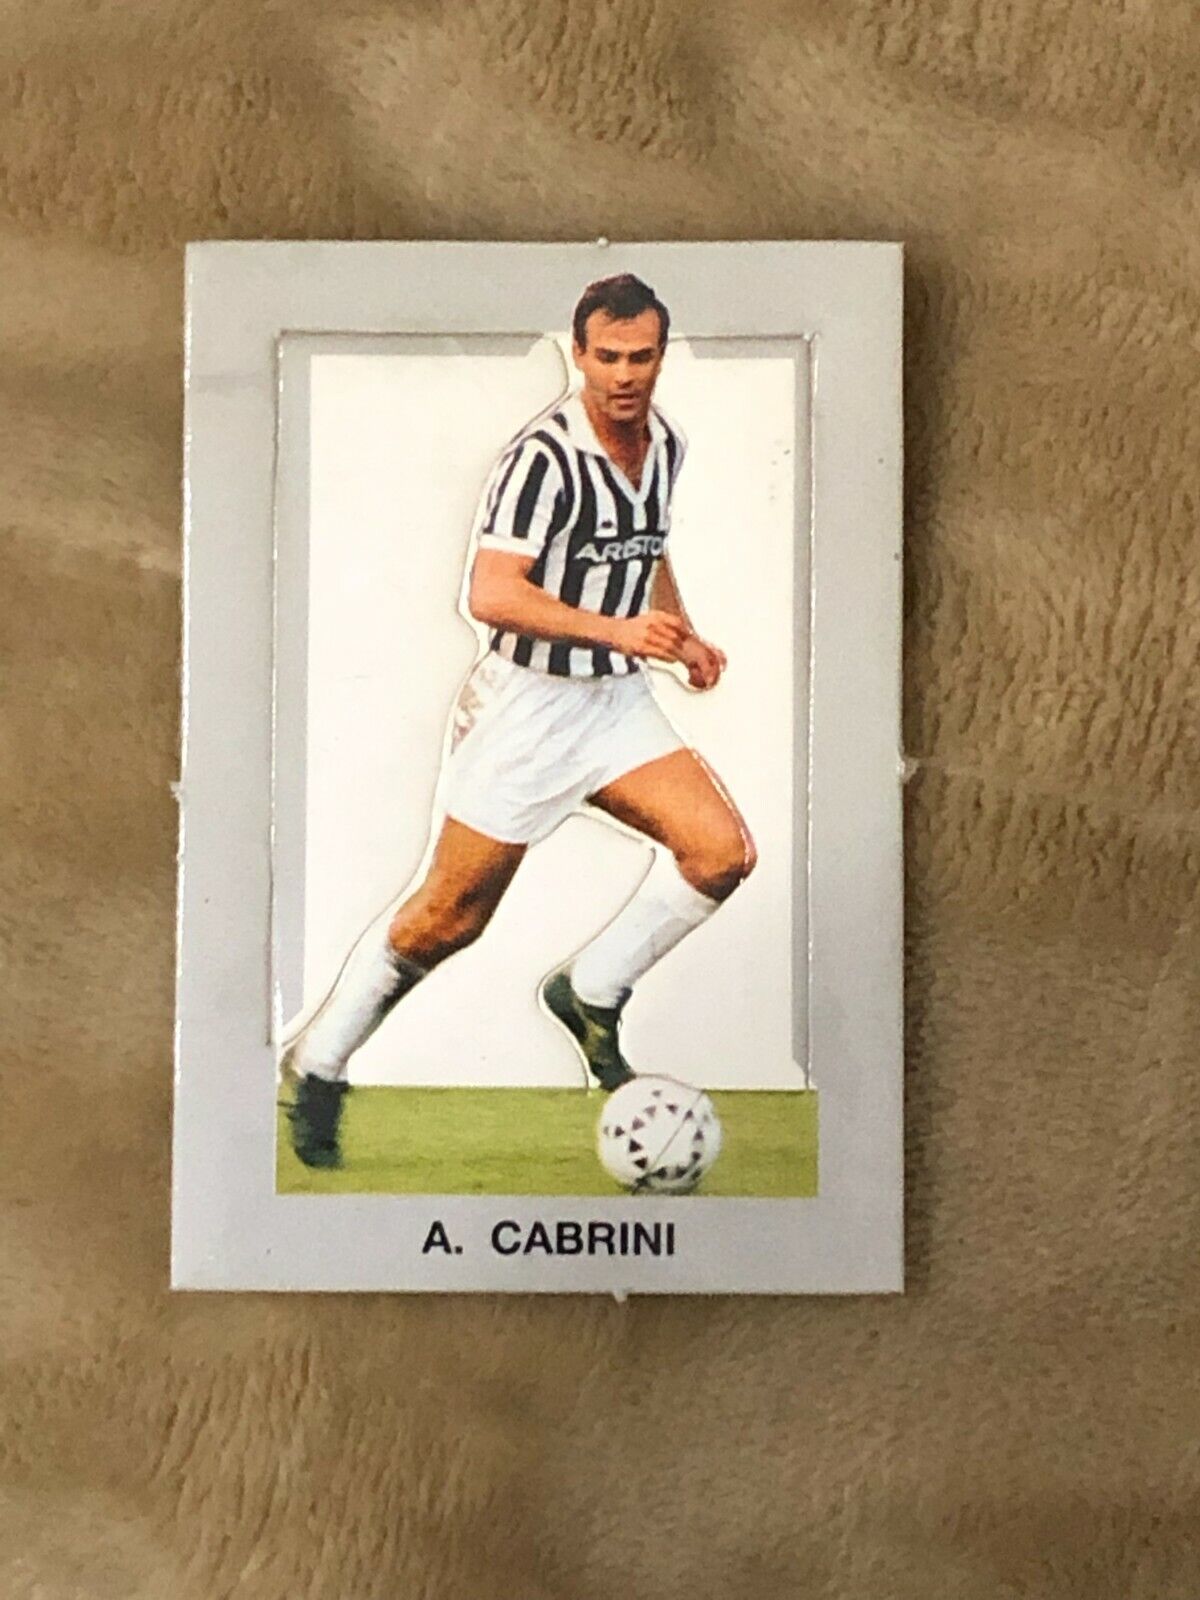 Figurina fustellata A. Cabrini Juventus sorpresa patatine anni 80 di Aa.vv.,  19